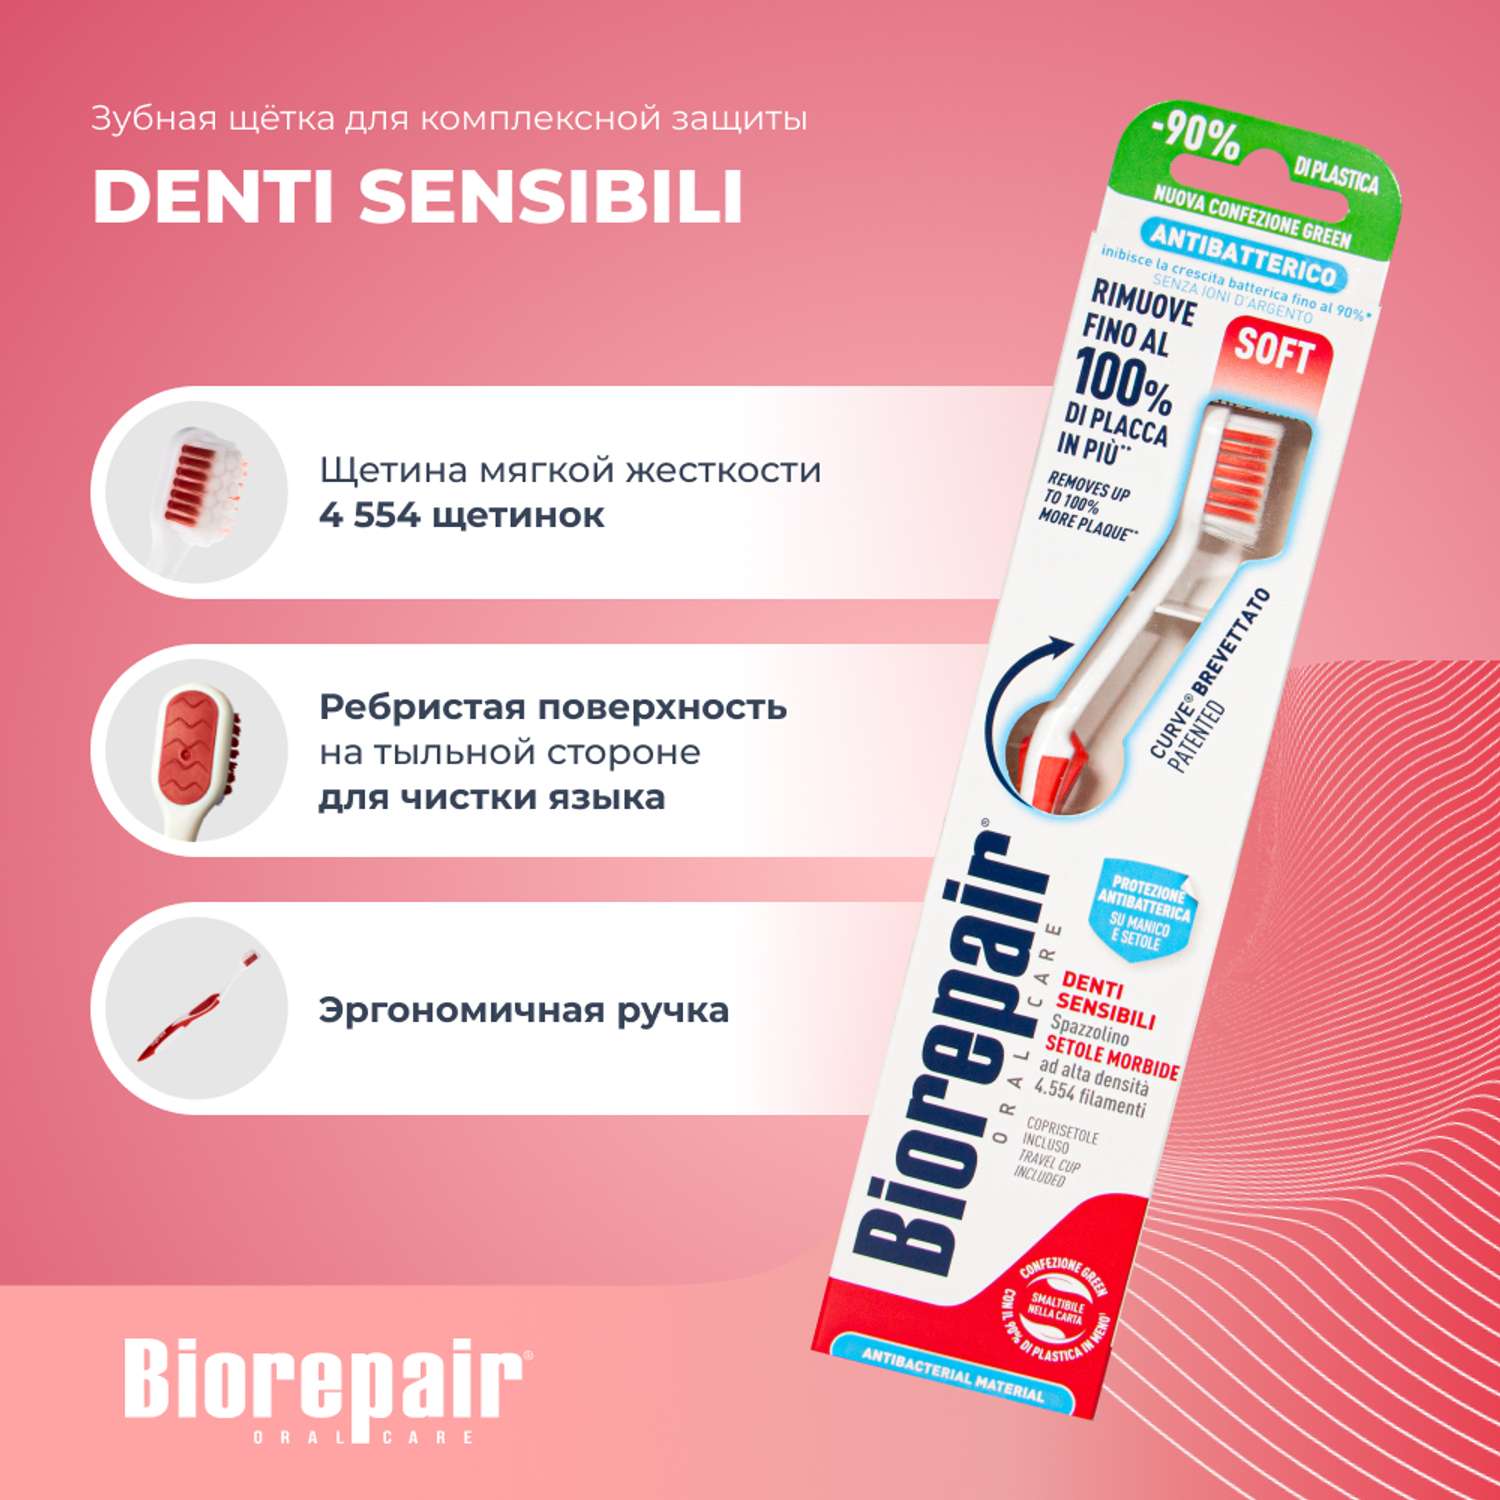 Зубная щетка Biorepair Curve Denti Sensibili изогнутая для чувствительных зубов - фото 2